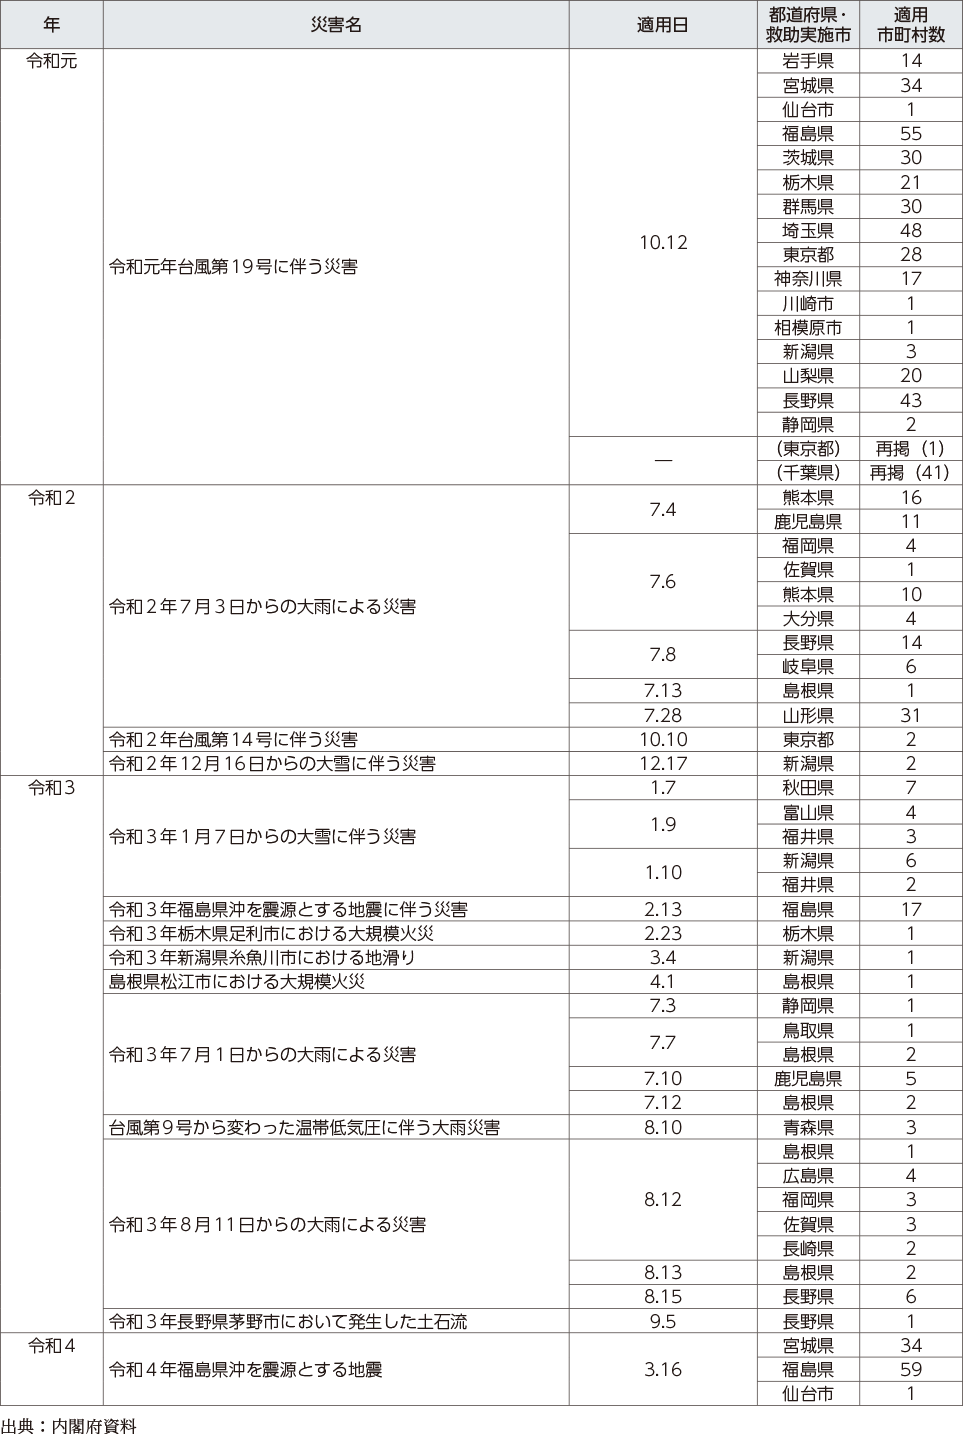 附属資料12　災害救助法の適用実績（阪神・淡路大震災以降）（5）